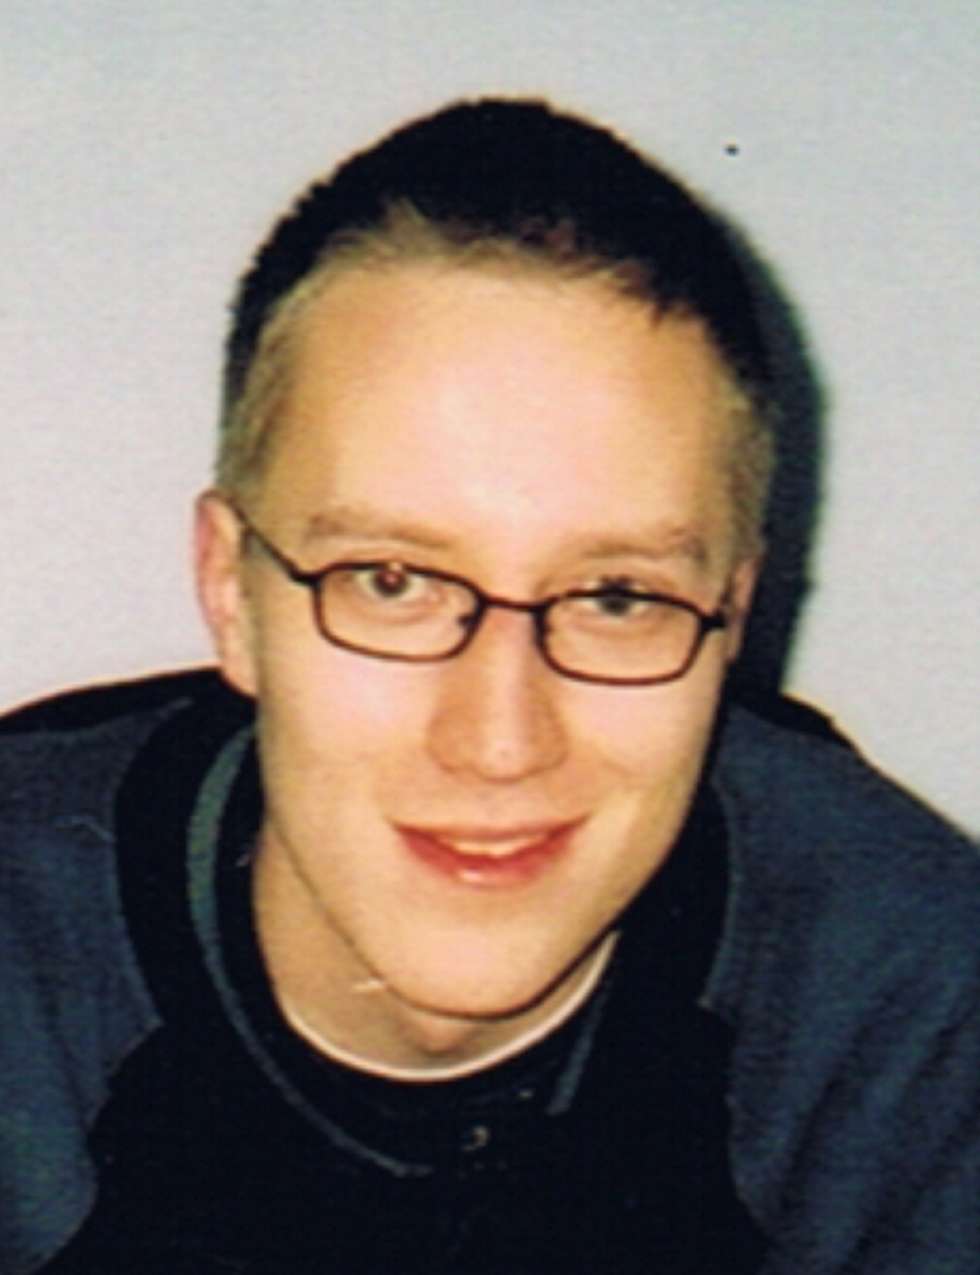  23 czerwca 2010 r. w Tomaszowie Lubelskim (lubelskie), zaginął 28-letni Krzysztof Zabandżała.
Ma 172 cm wzrostu, niebieskie oczy, na lewym policzku widoczną plamkę.<BR><BR>
W dniu zaginięcia ubrany był w jasna koszulkę oraz jasne, długie spodnie.
<BR><BR>
Ktokolwiek widział Krzysztofa Zabandżałę lub ma jakiekolwiek informacje o jego losie proszony jest o kontakt z ITAKĄ - Centrum Poszukiwań Ludzi Zaginionych pod całodobowymi numerami:  801 24 70 70 oraz 22 654 70 70. Można również napisać w tej sprawie do ITAKI: itaka@zaginieni.pl. Naszym informatorom gwarantujemy dyskrecję.
